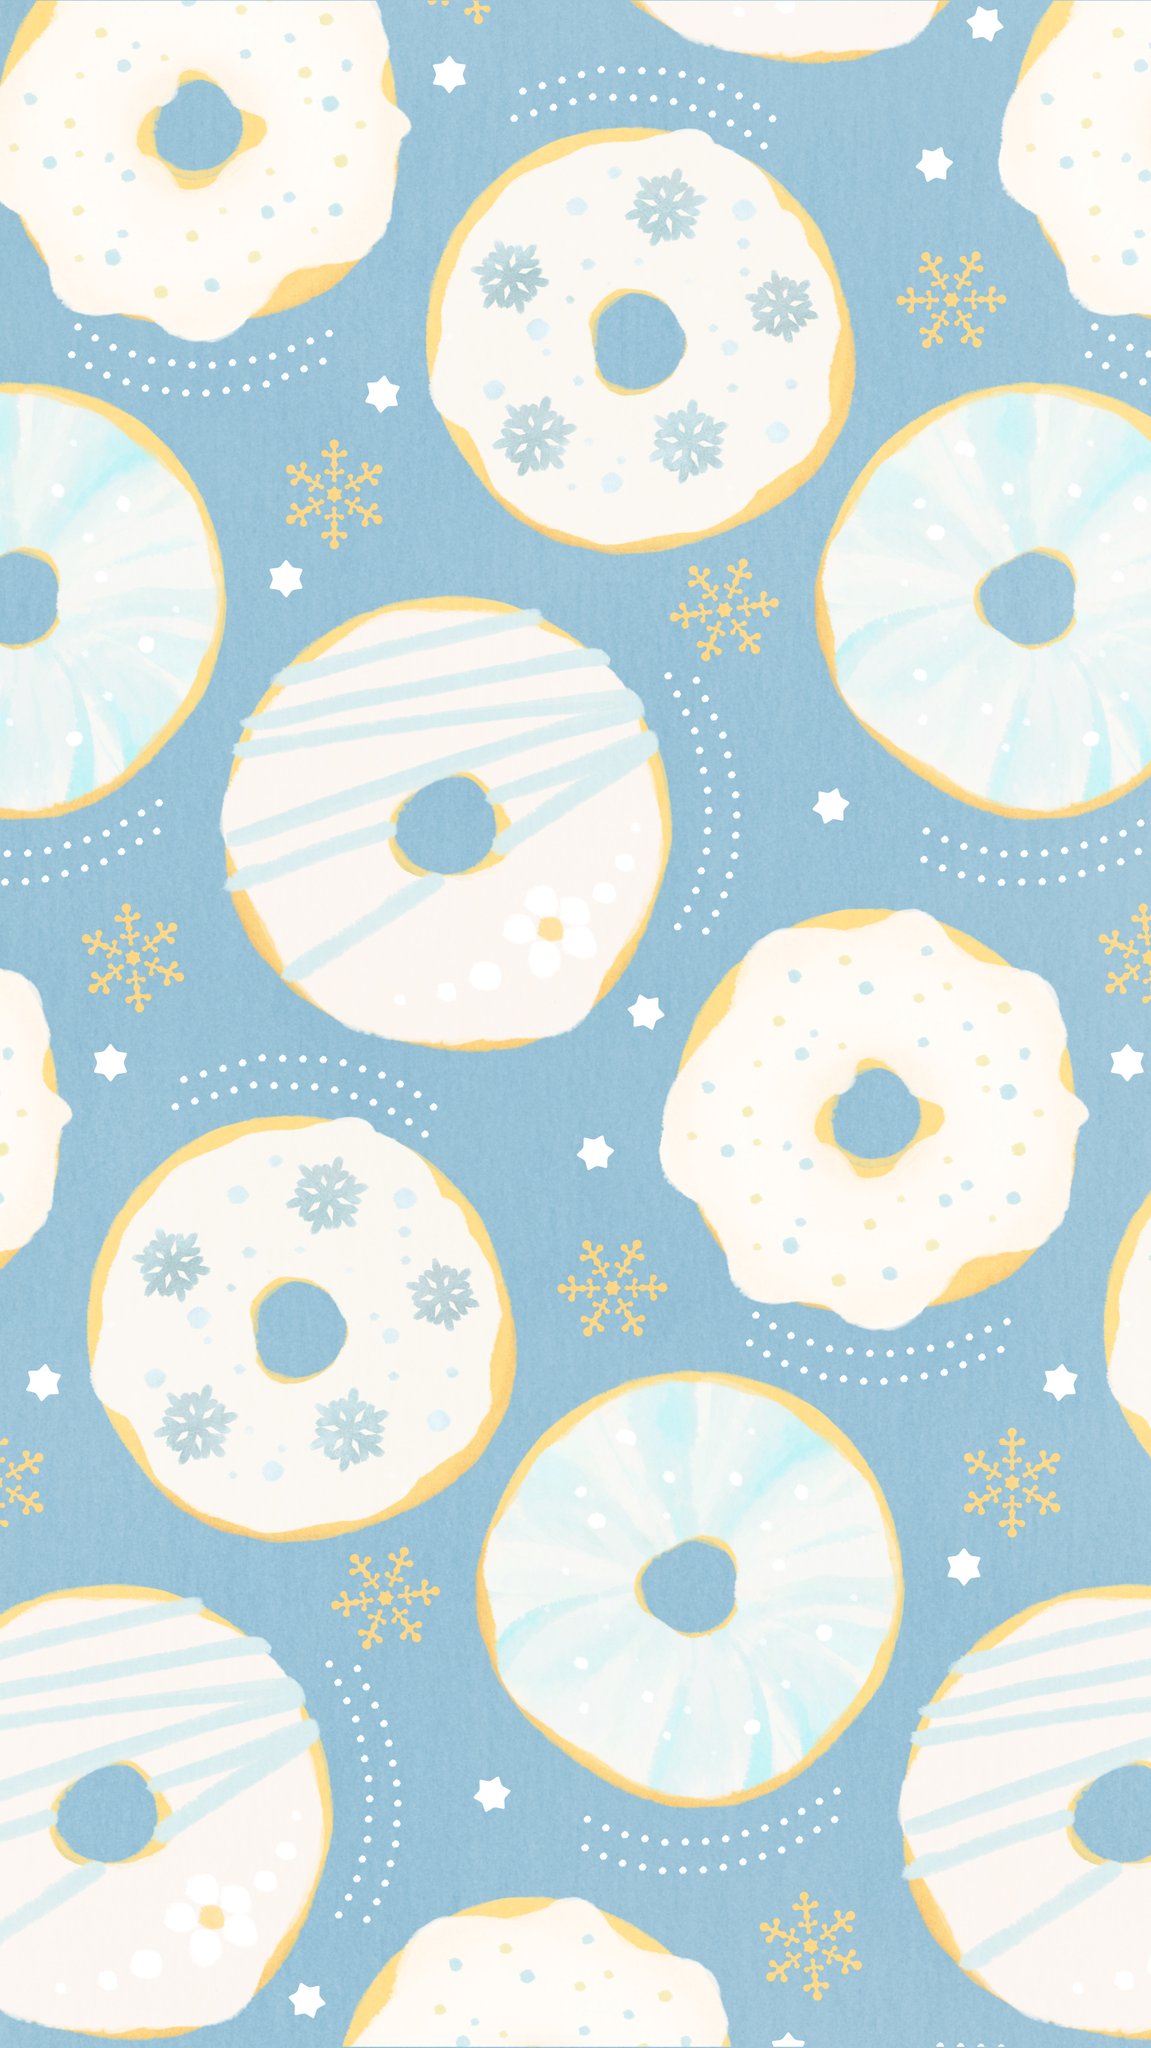 ট ইট র Omiyu お返事遅くなります ドーナツな壁紙 Illust Illustration ドーナツ Donuts イラスト Iphone壁紙 壁紙 雪